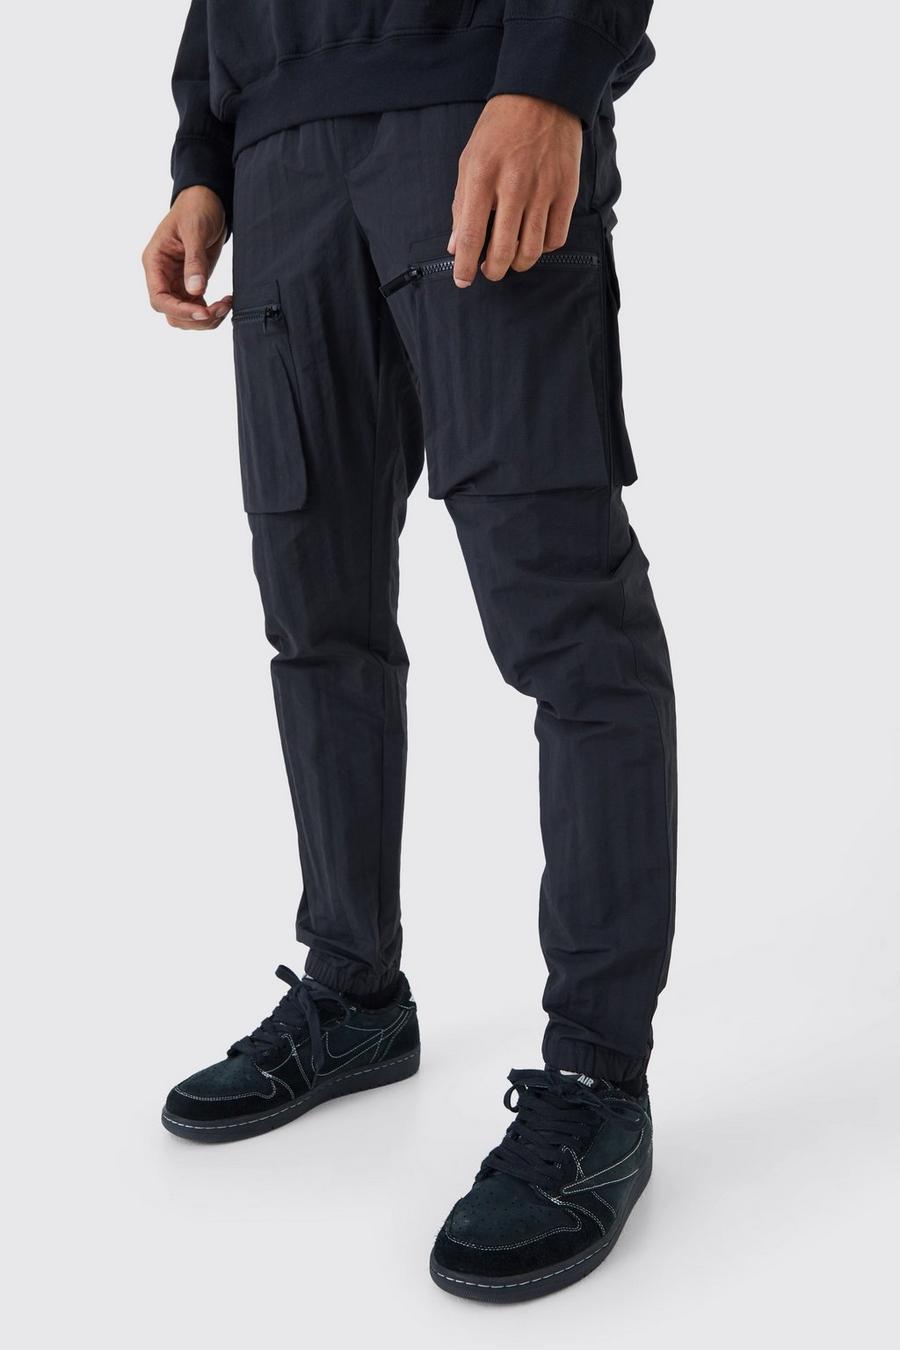 Black Elastic Waist Slim Fit Crinkle Nylon Cargo Trouser